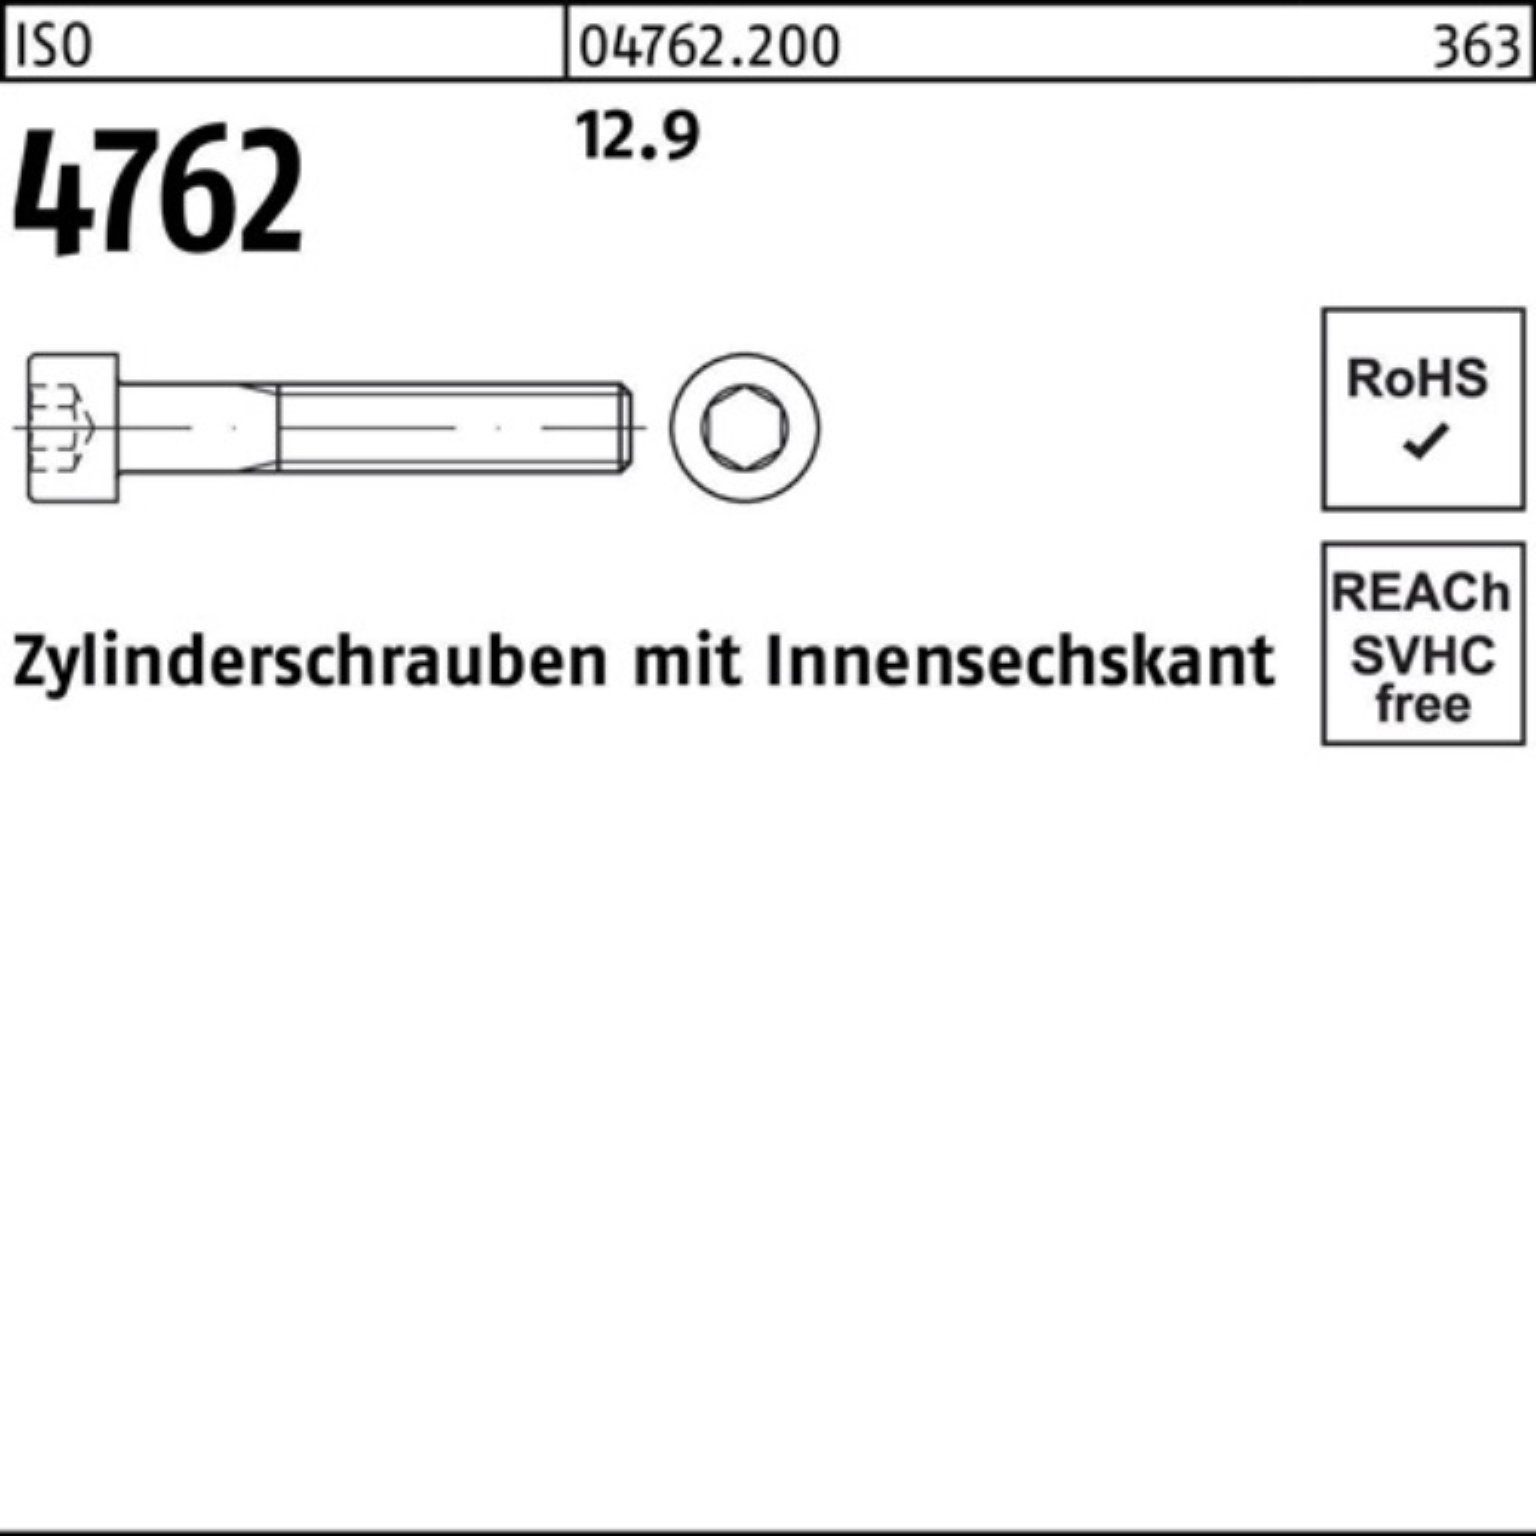 12.9 100er 200 Zylinderschraube 1 Zylinderschraube Stück 4762 ISO Pack Innen-6kt Reyher M48x